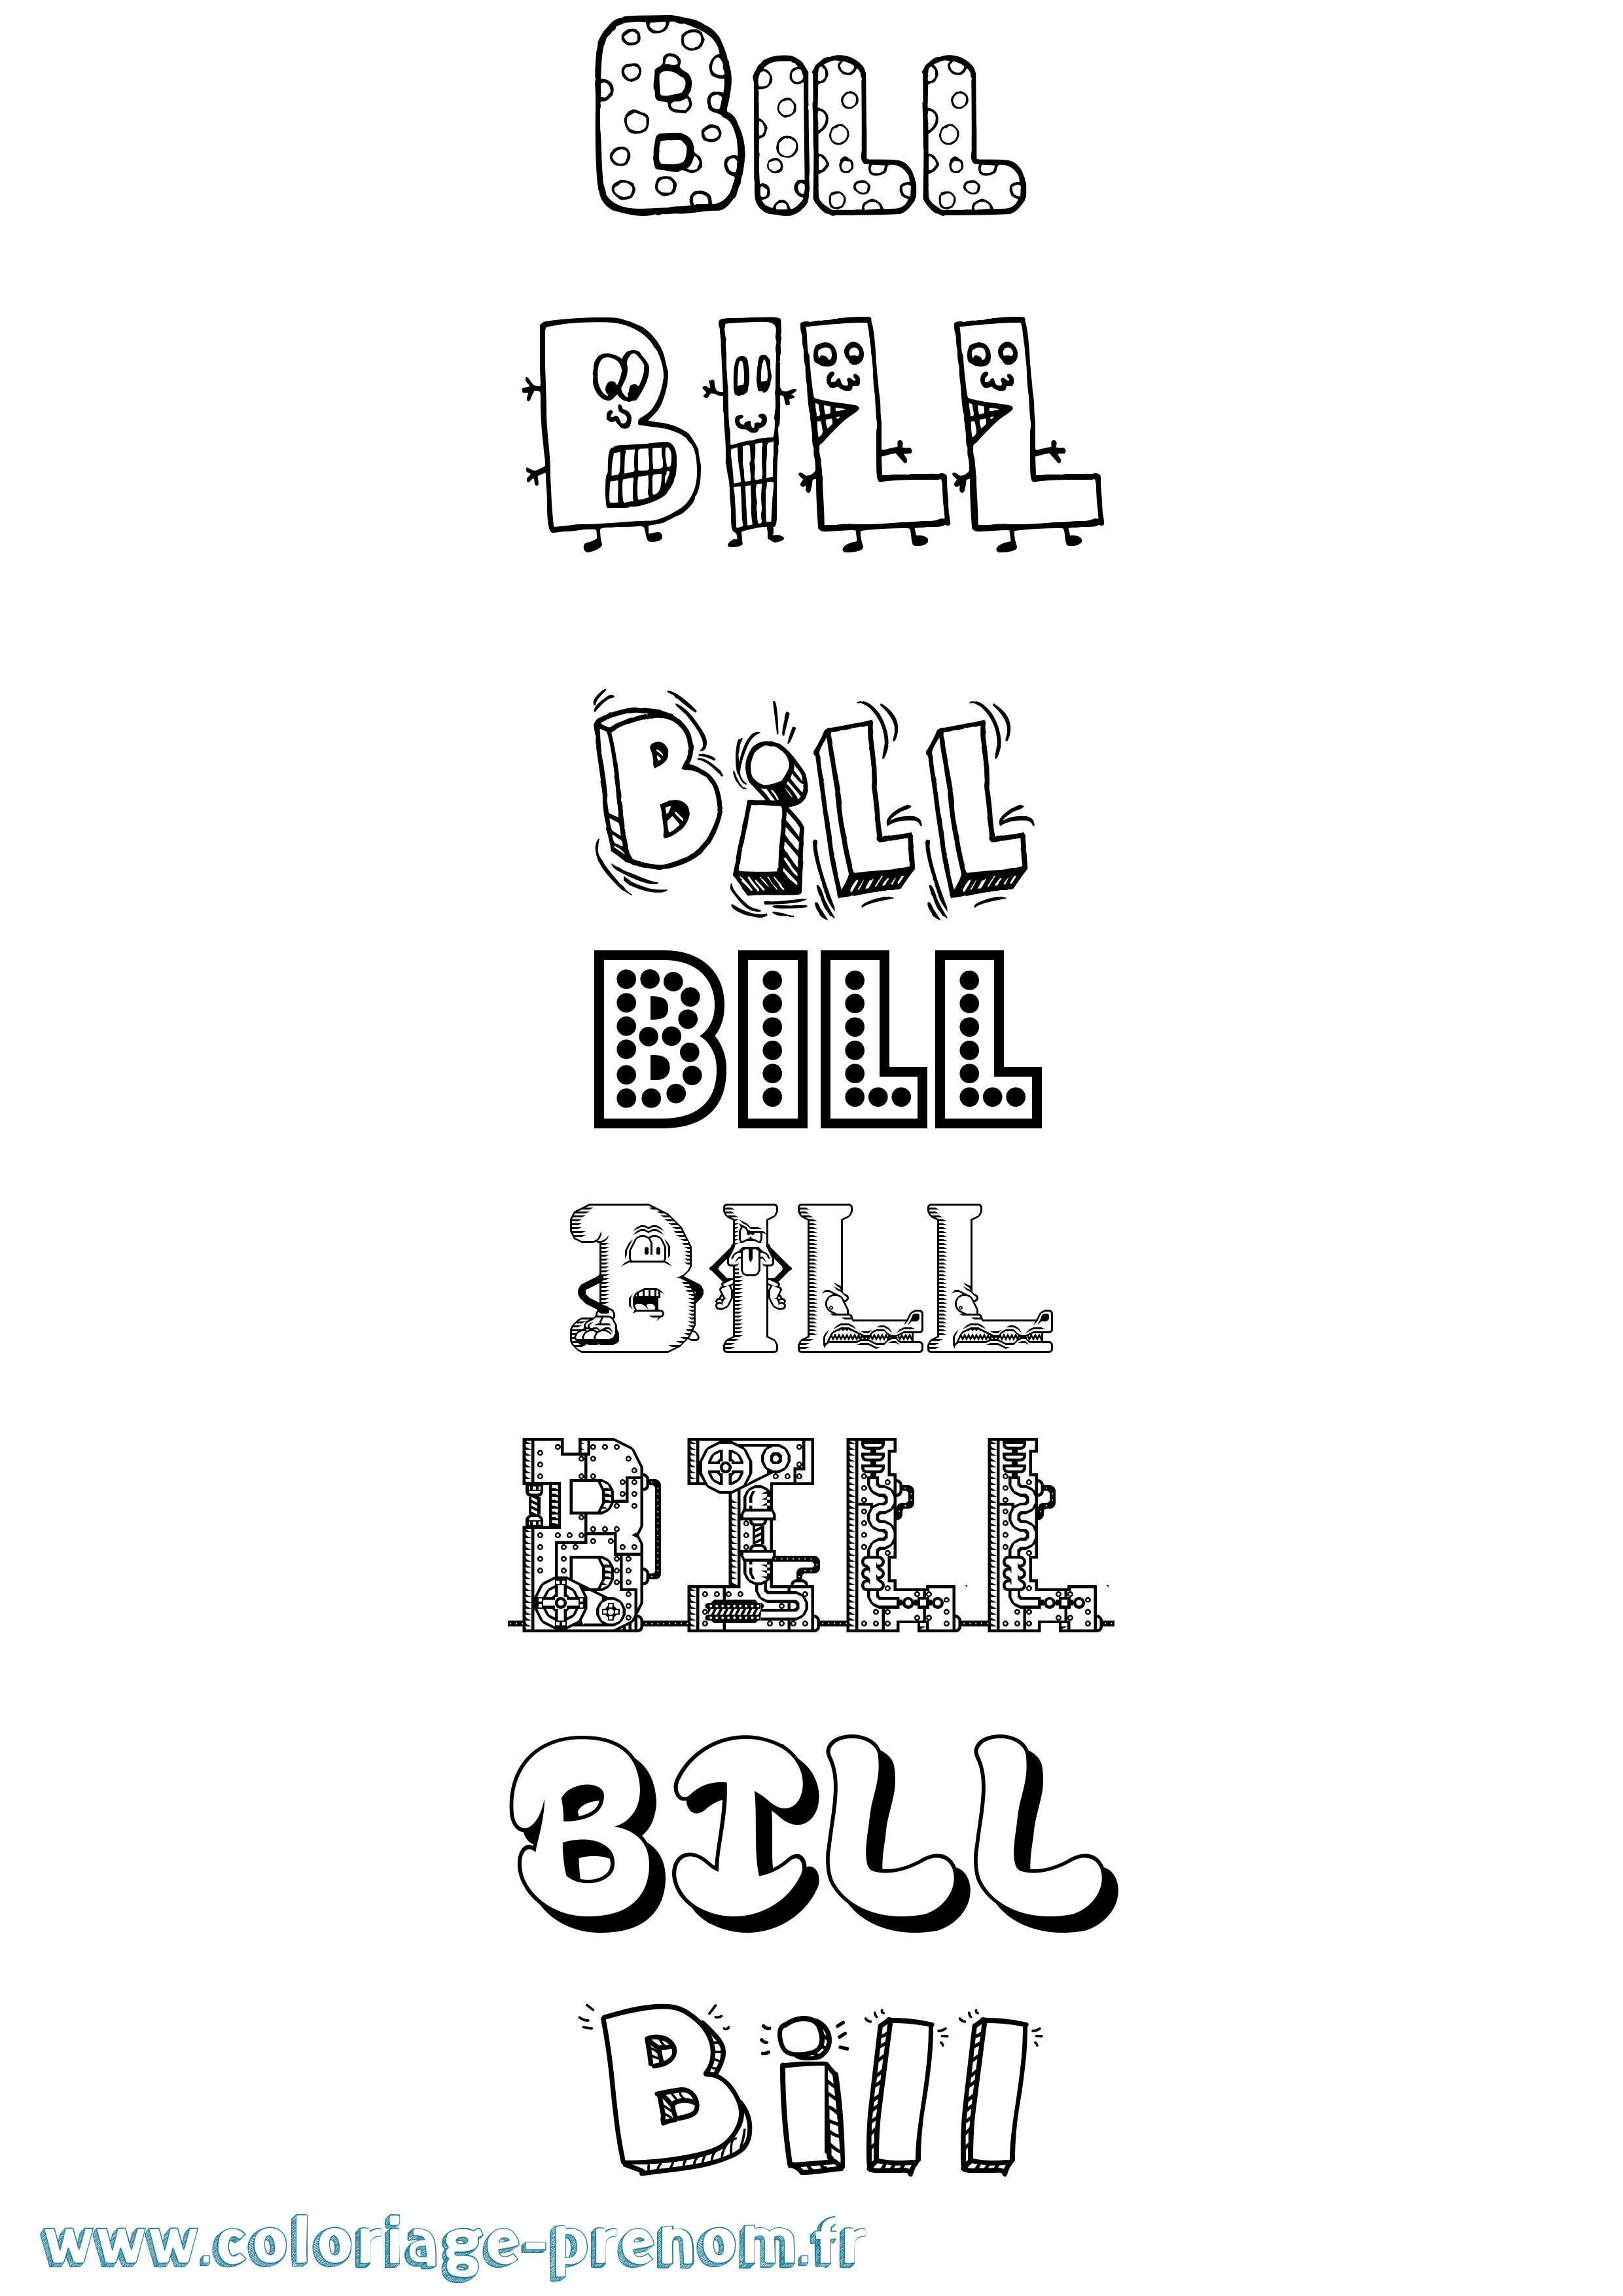 Coloriage prénom Bill Fun